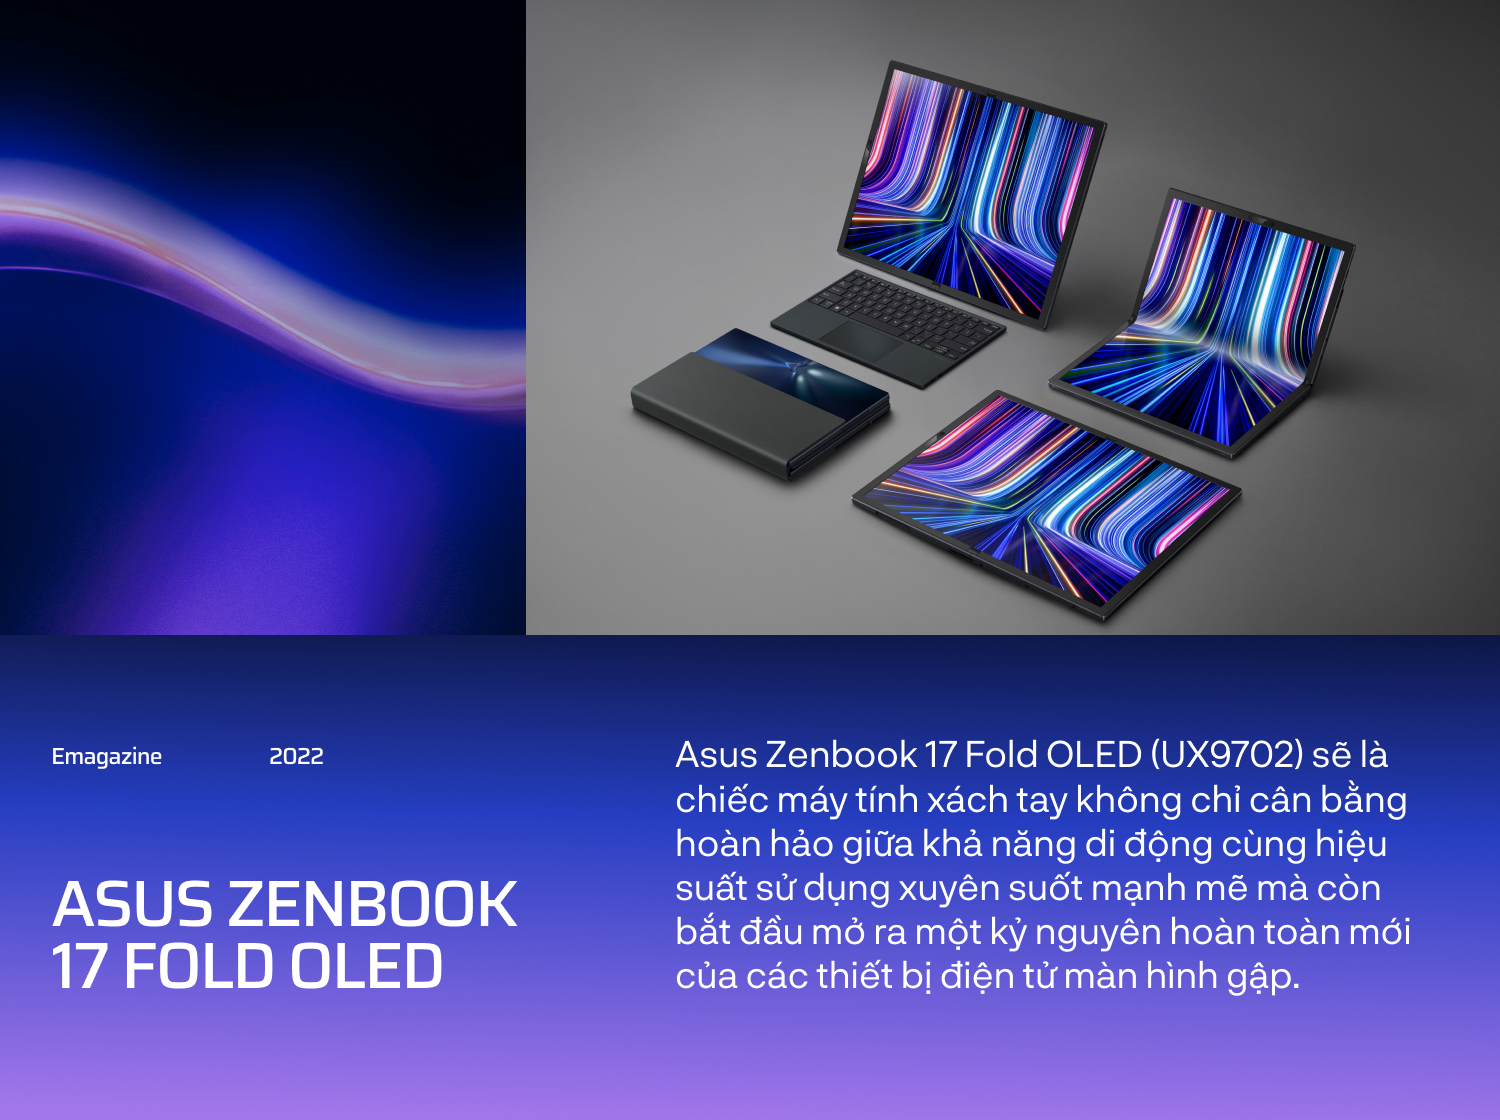 Gập ngàn giới hạn, mở vạn tương lai cùng máy tính xách tay màn hình gập ASUS Zenbook 17 Fold OLED - Ảnh 2.